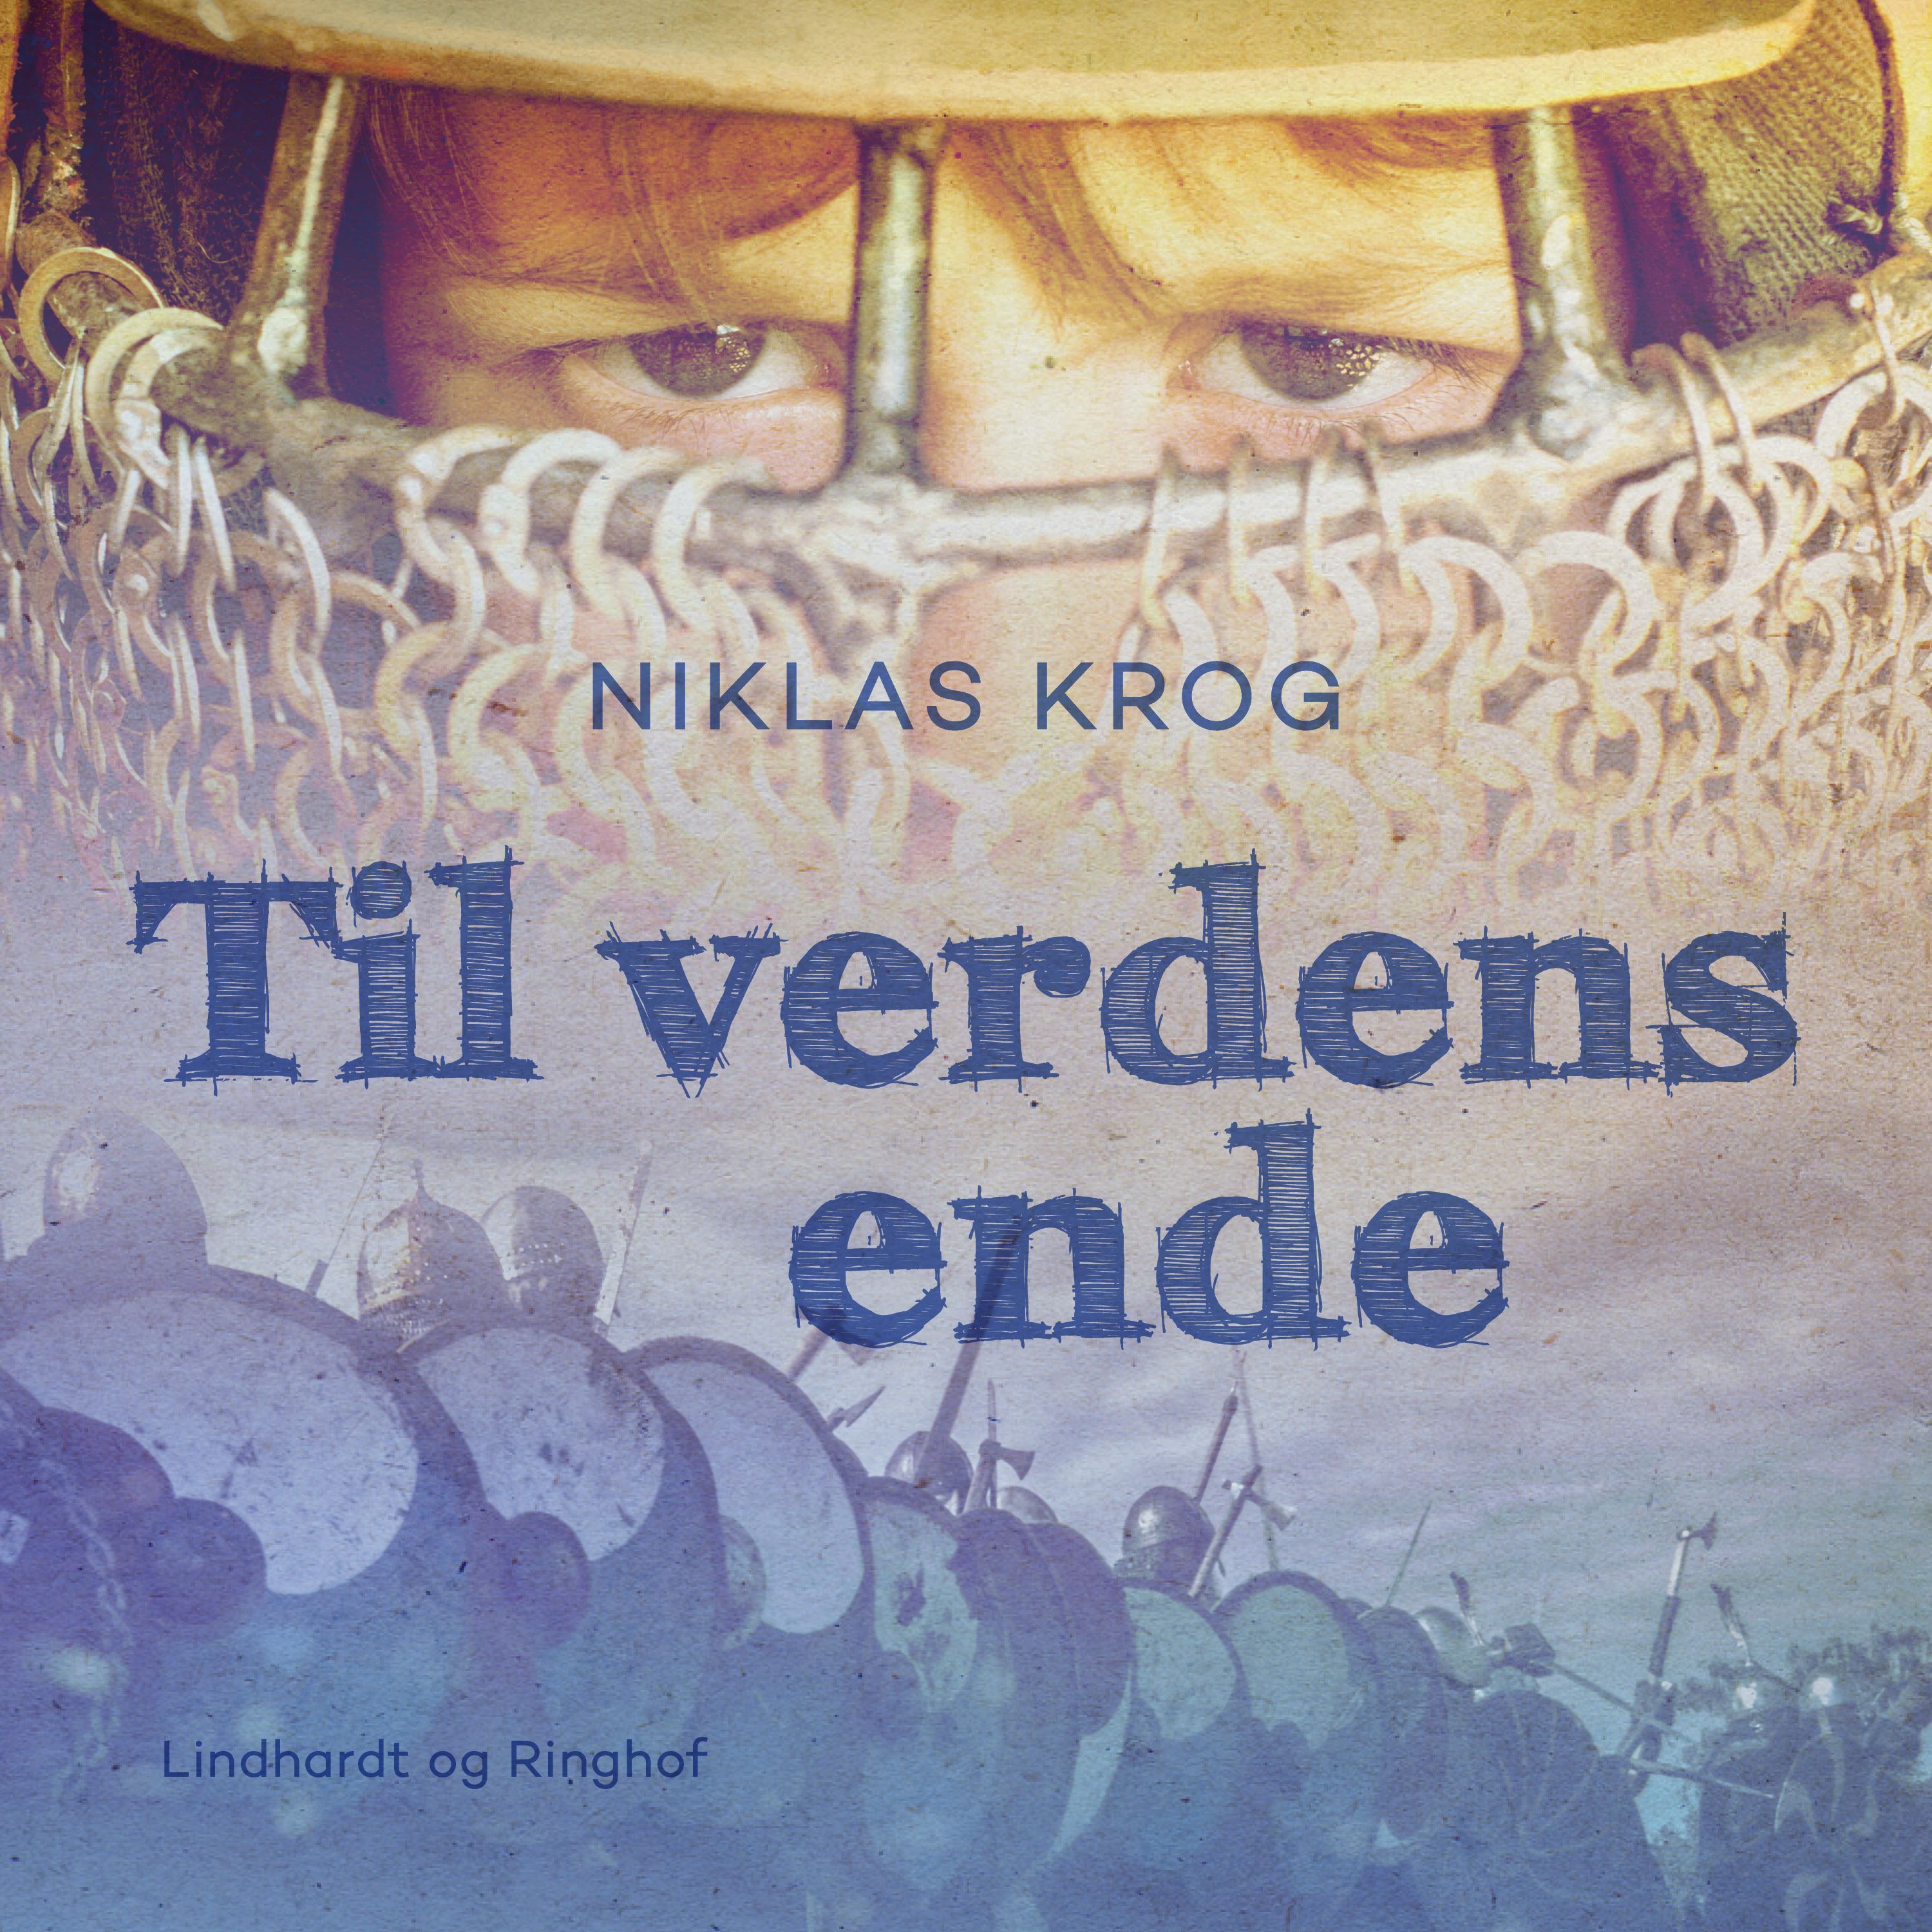 Til verdens ende, audiobook by Niklas Krog